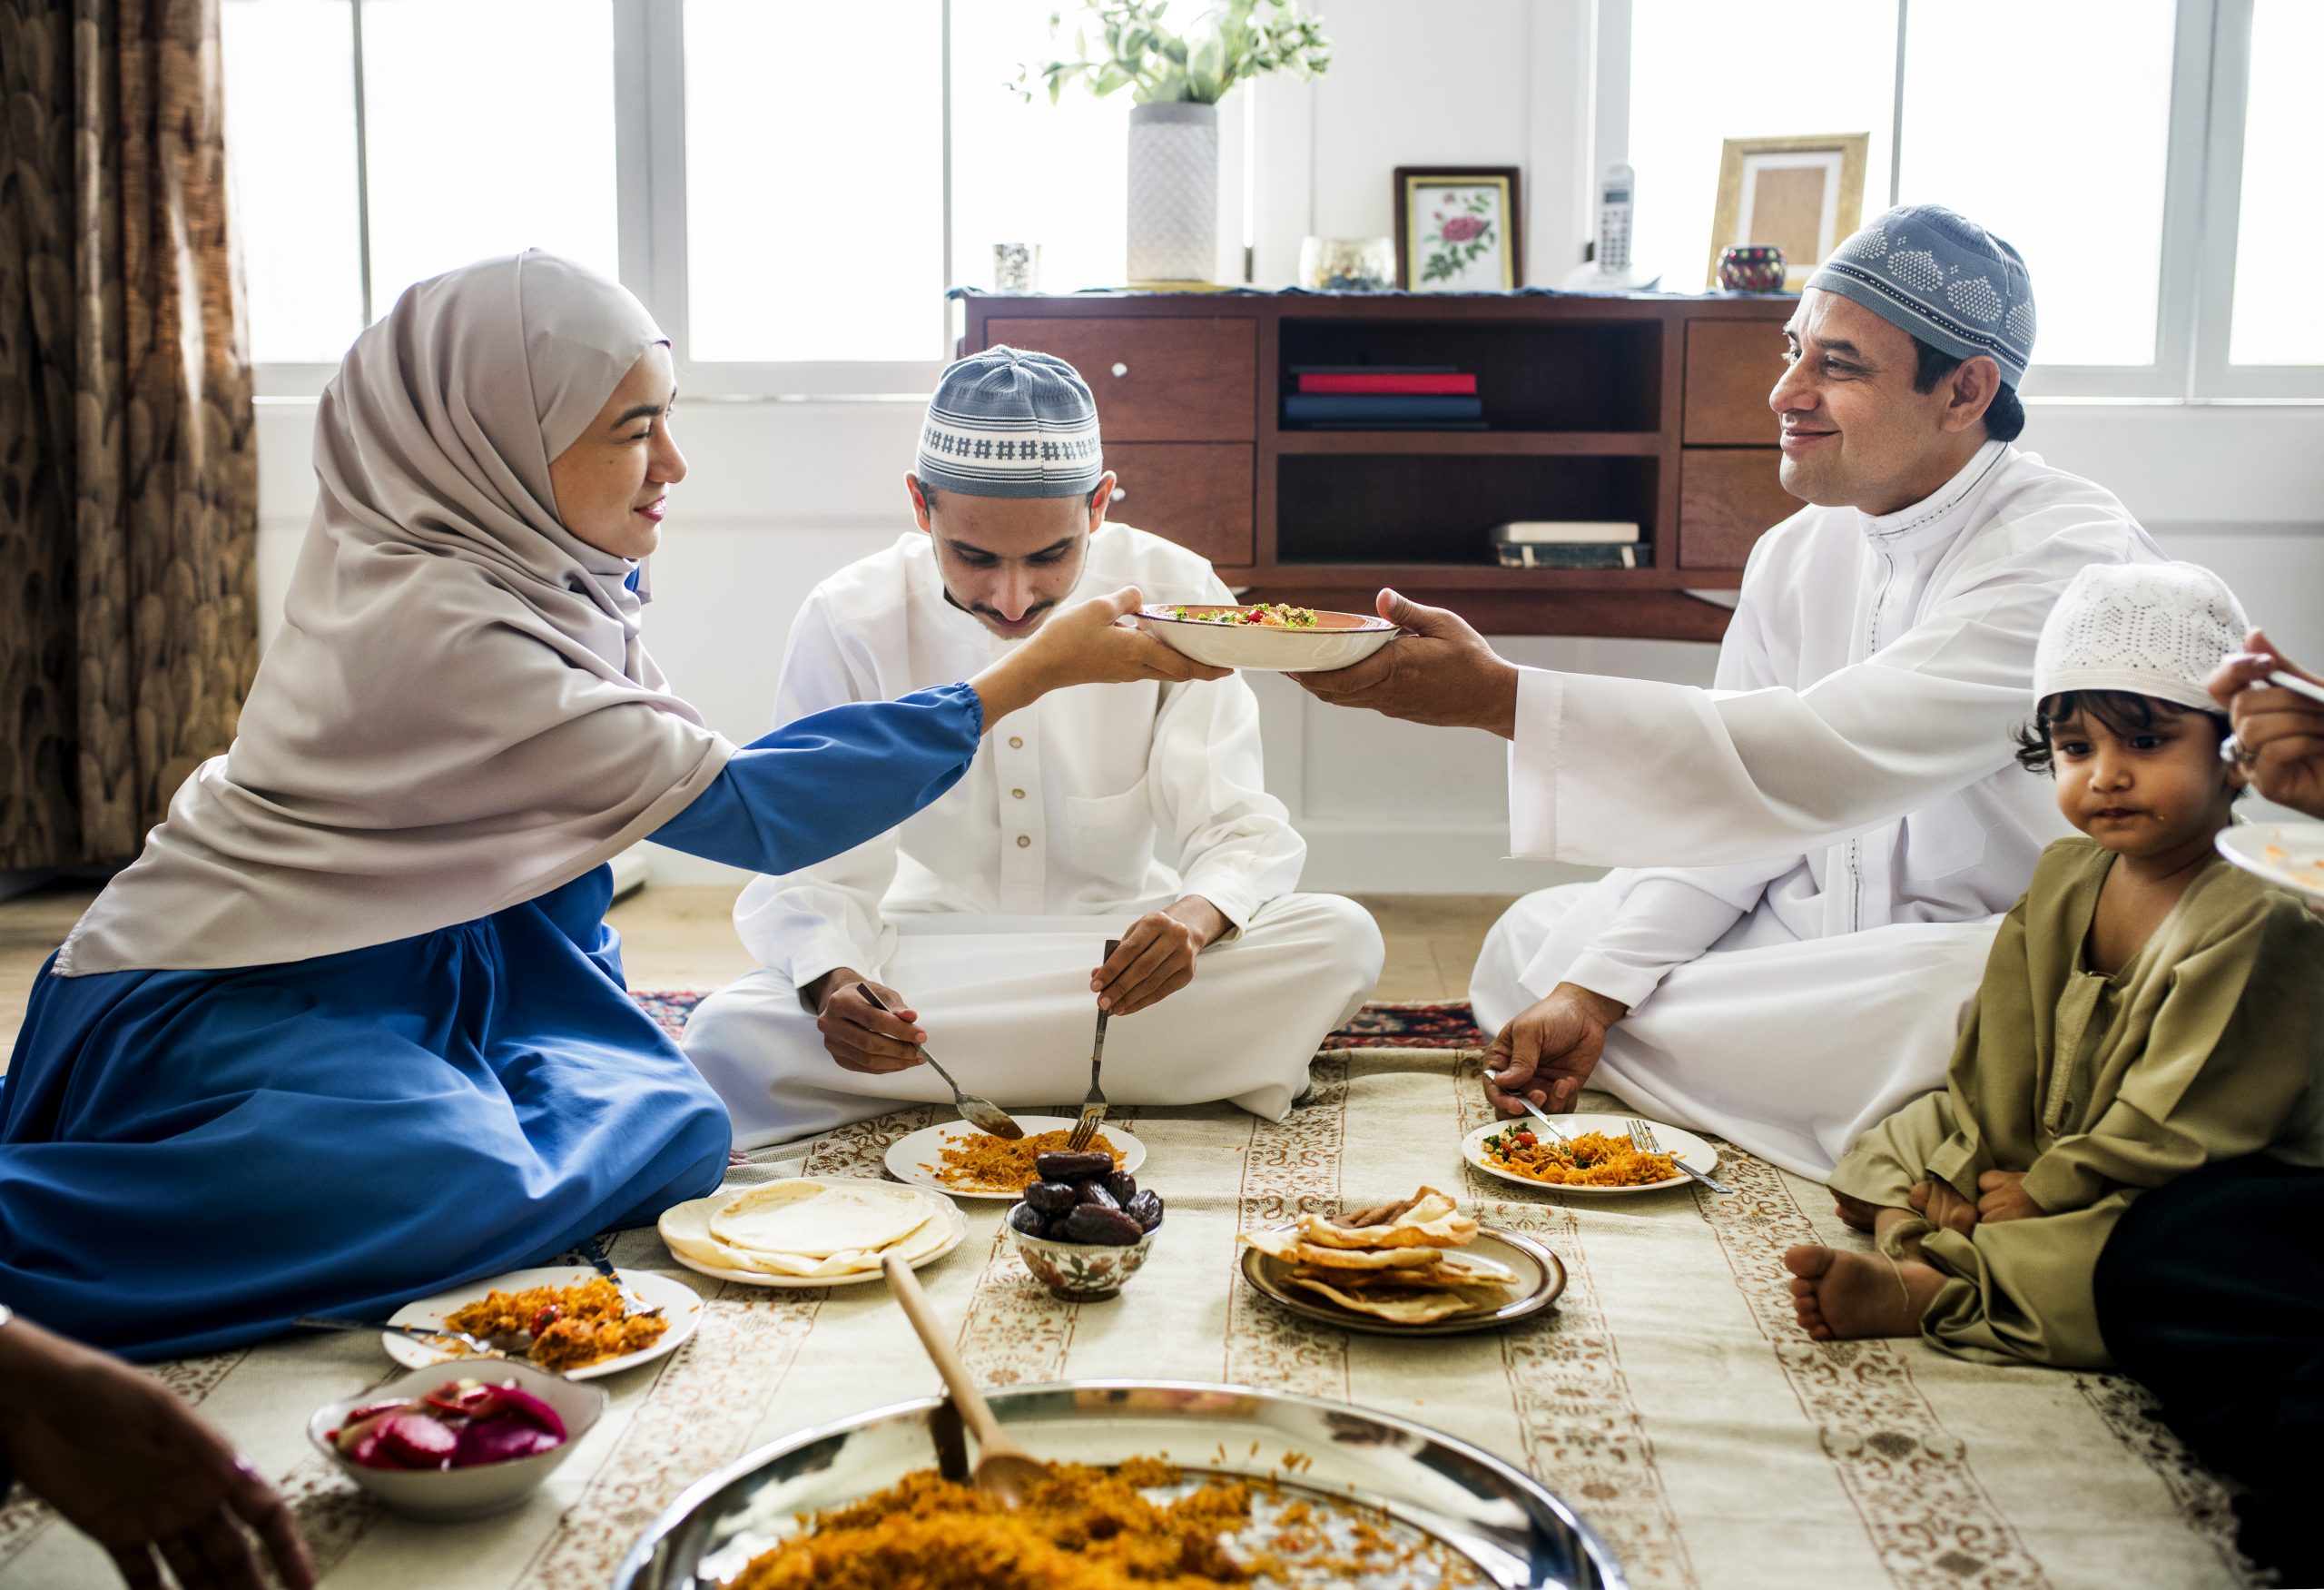 Можно ли близость с женой в рамадан. Мусульманская семья. Арабская семья. Традиционная мусульманская еда. Традиции мусульман в семье.